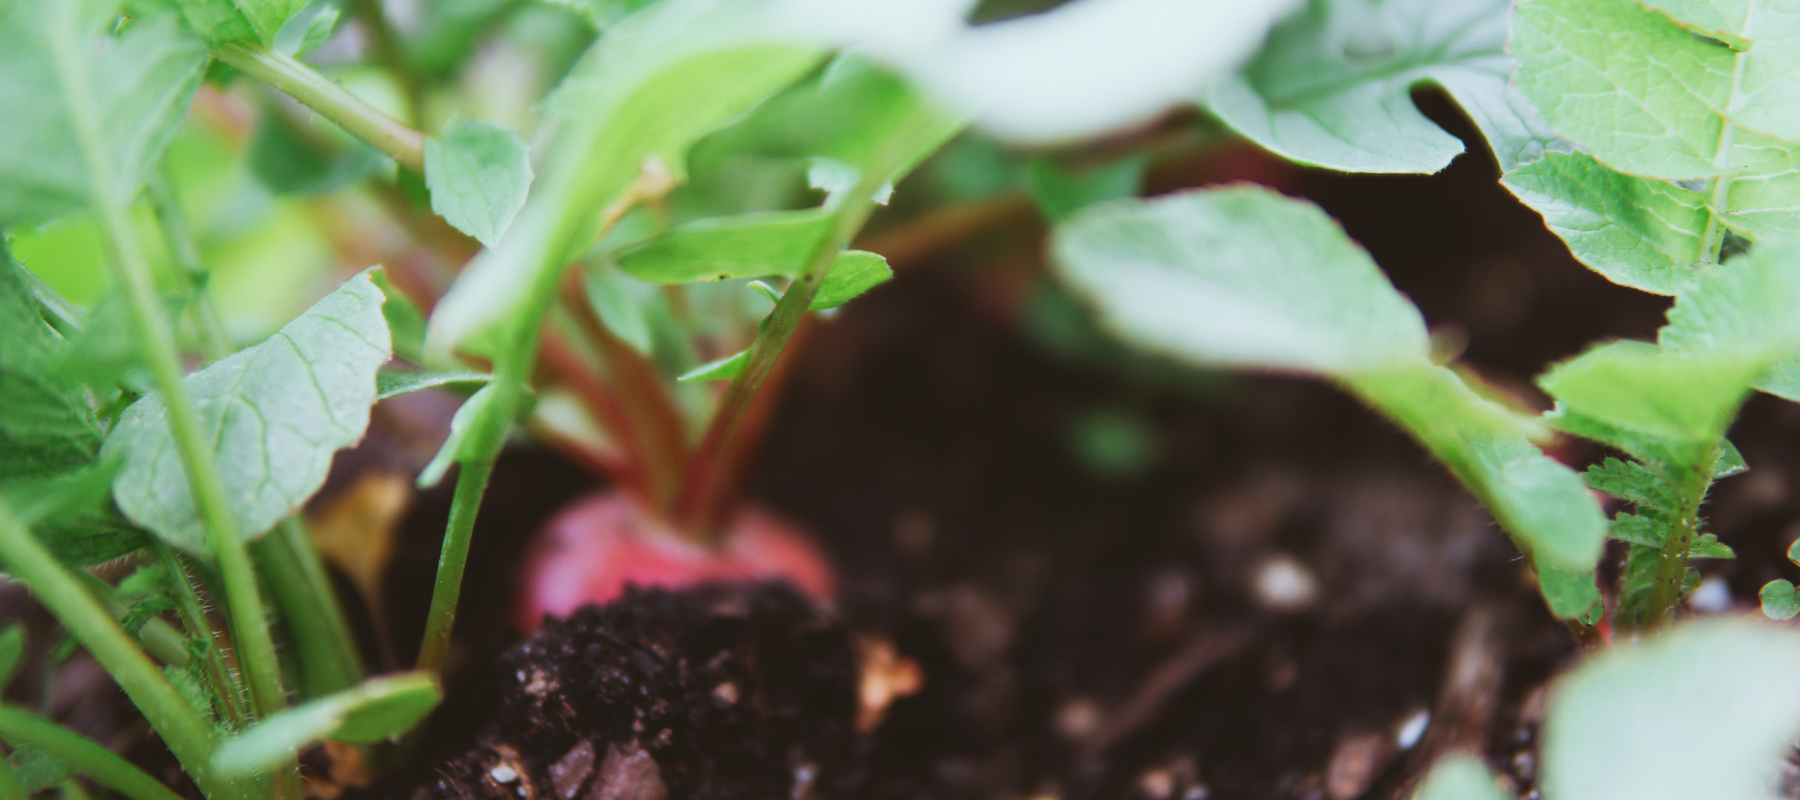 Organic Gardening - Growing your own Fertility